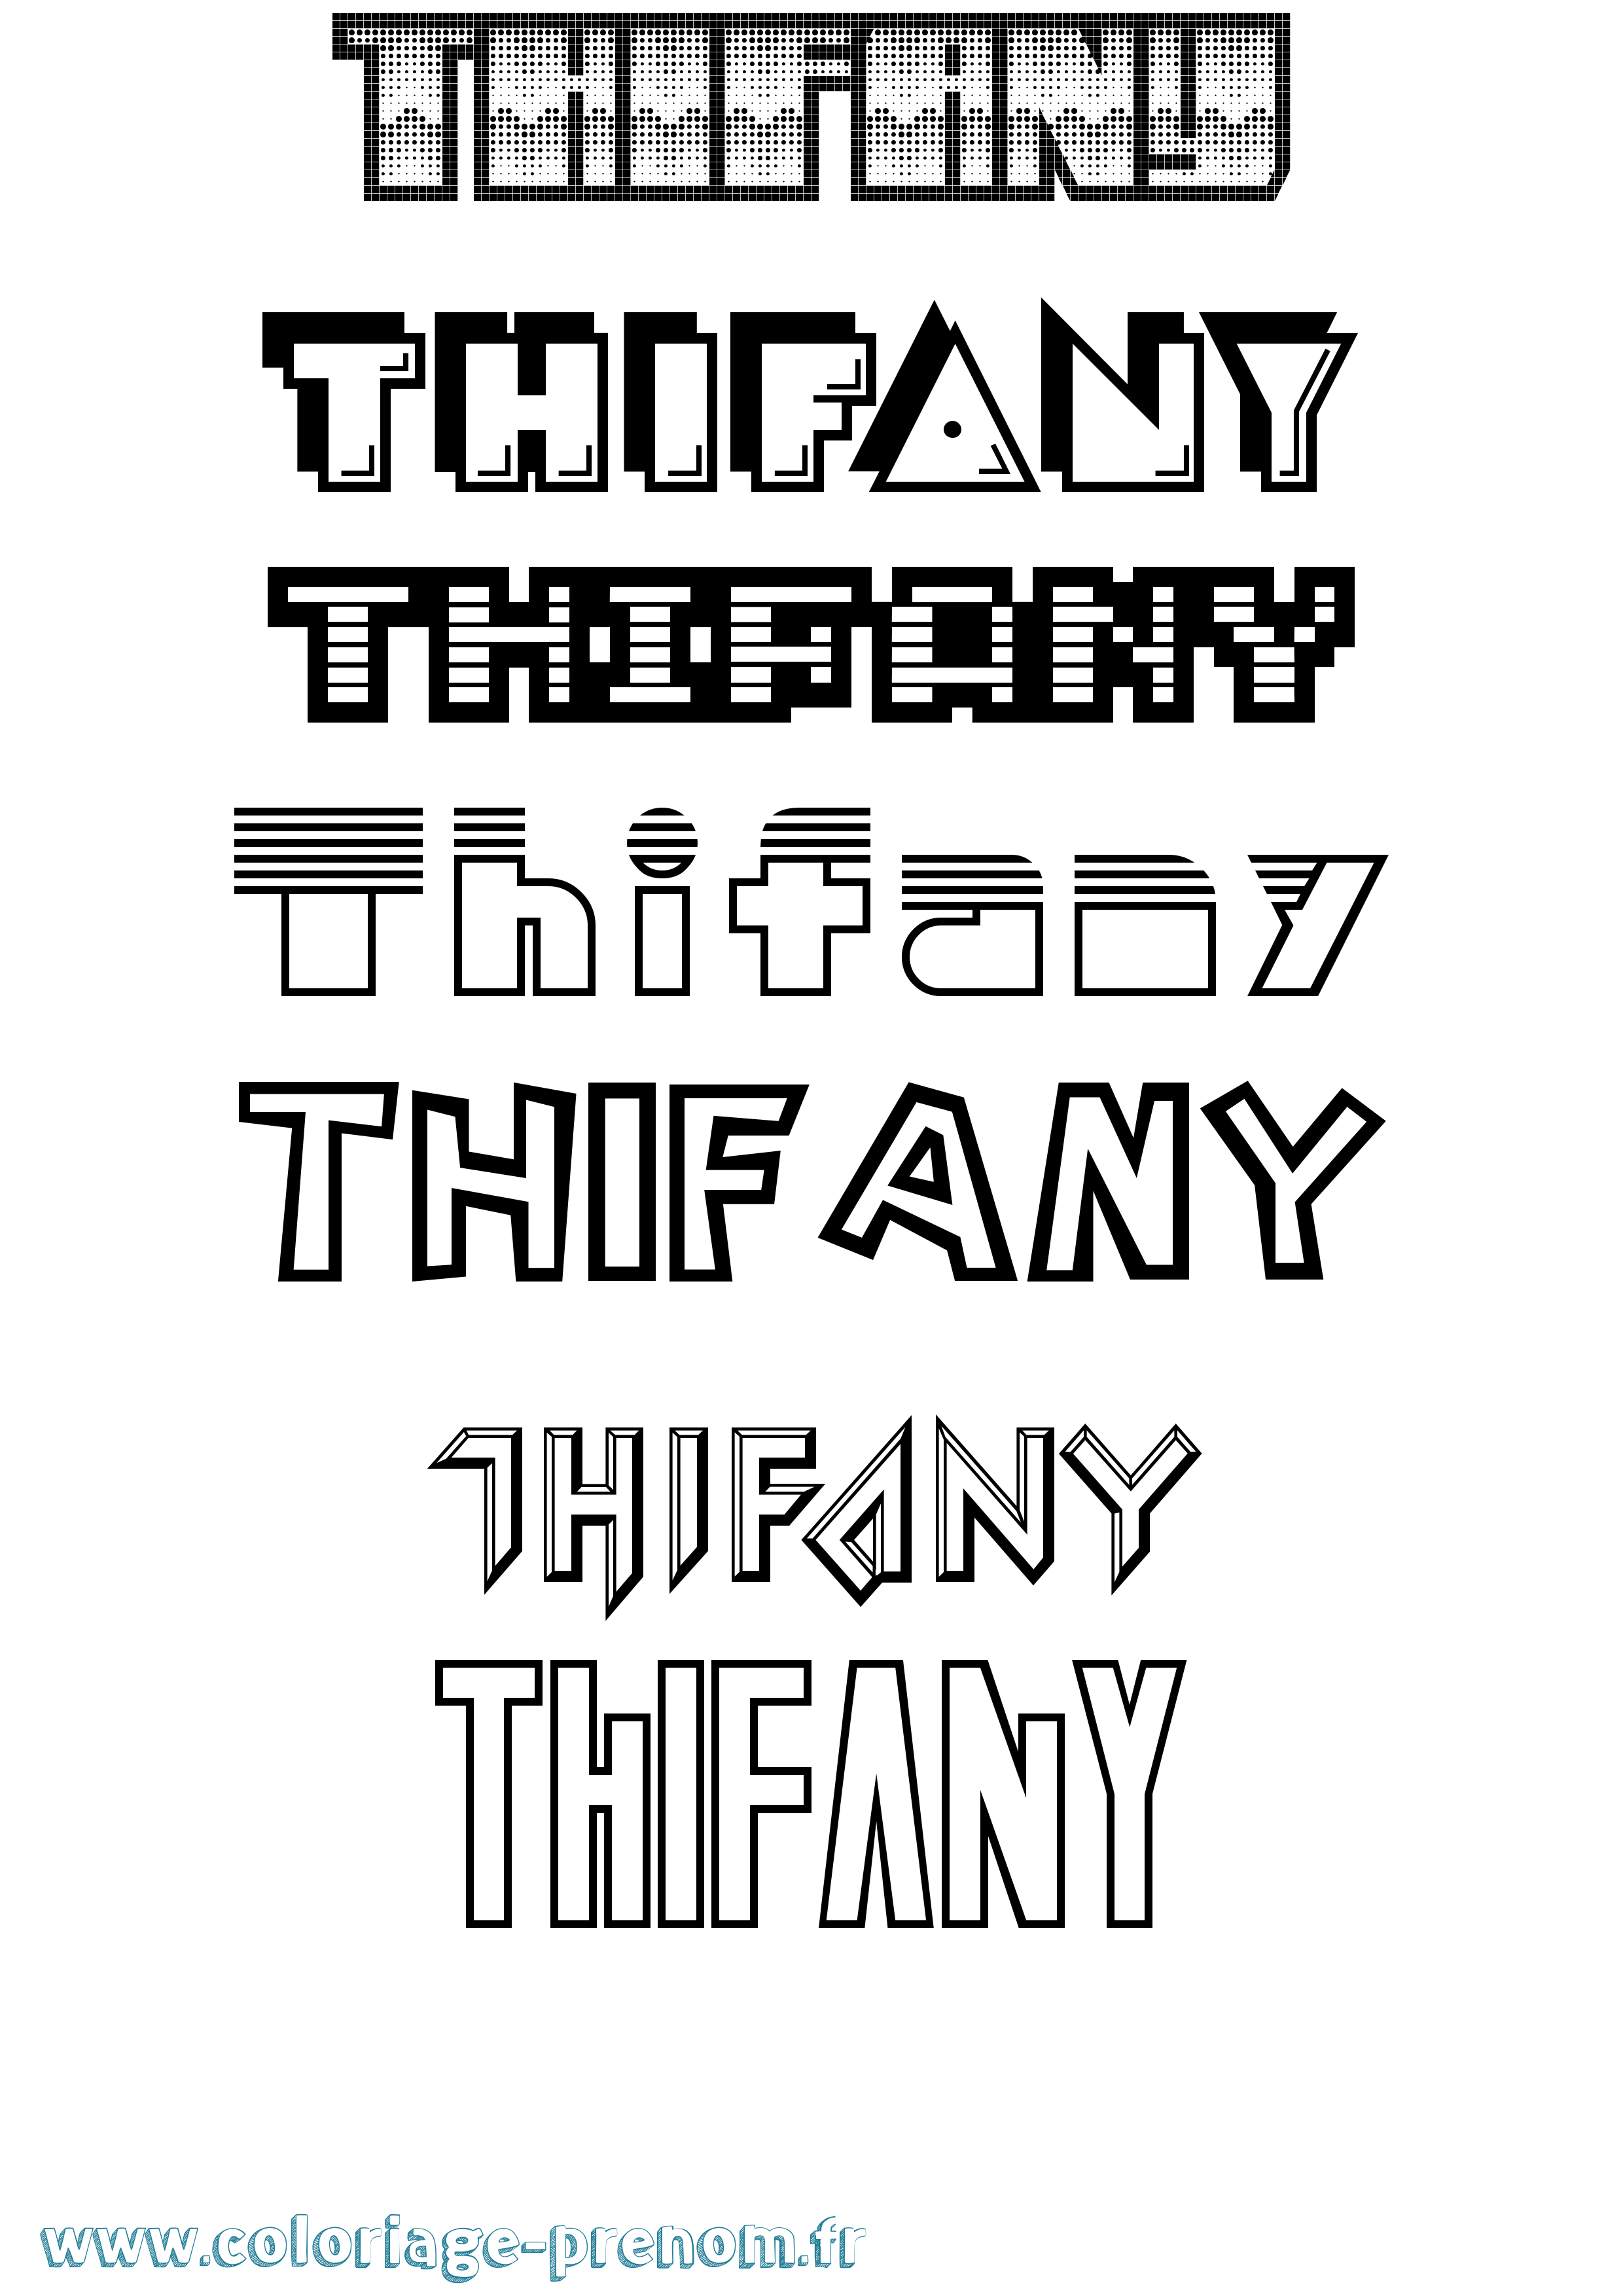 Coloriage prénom Thifany Jeux Vidéos